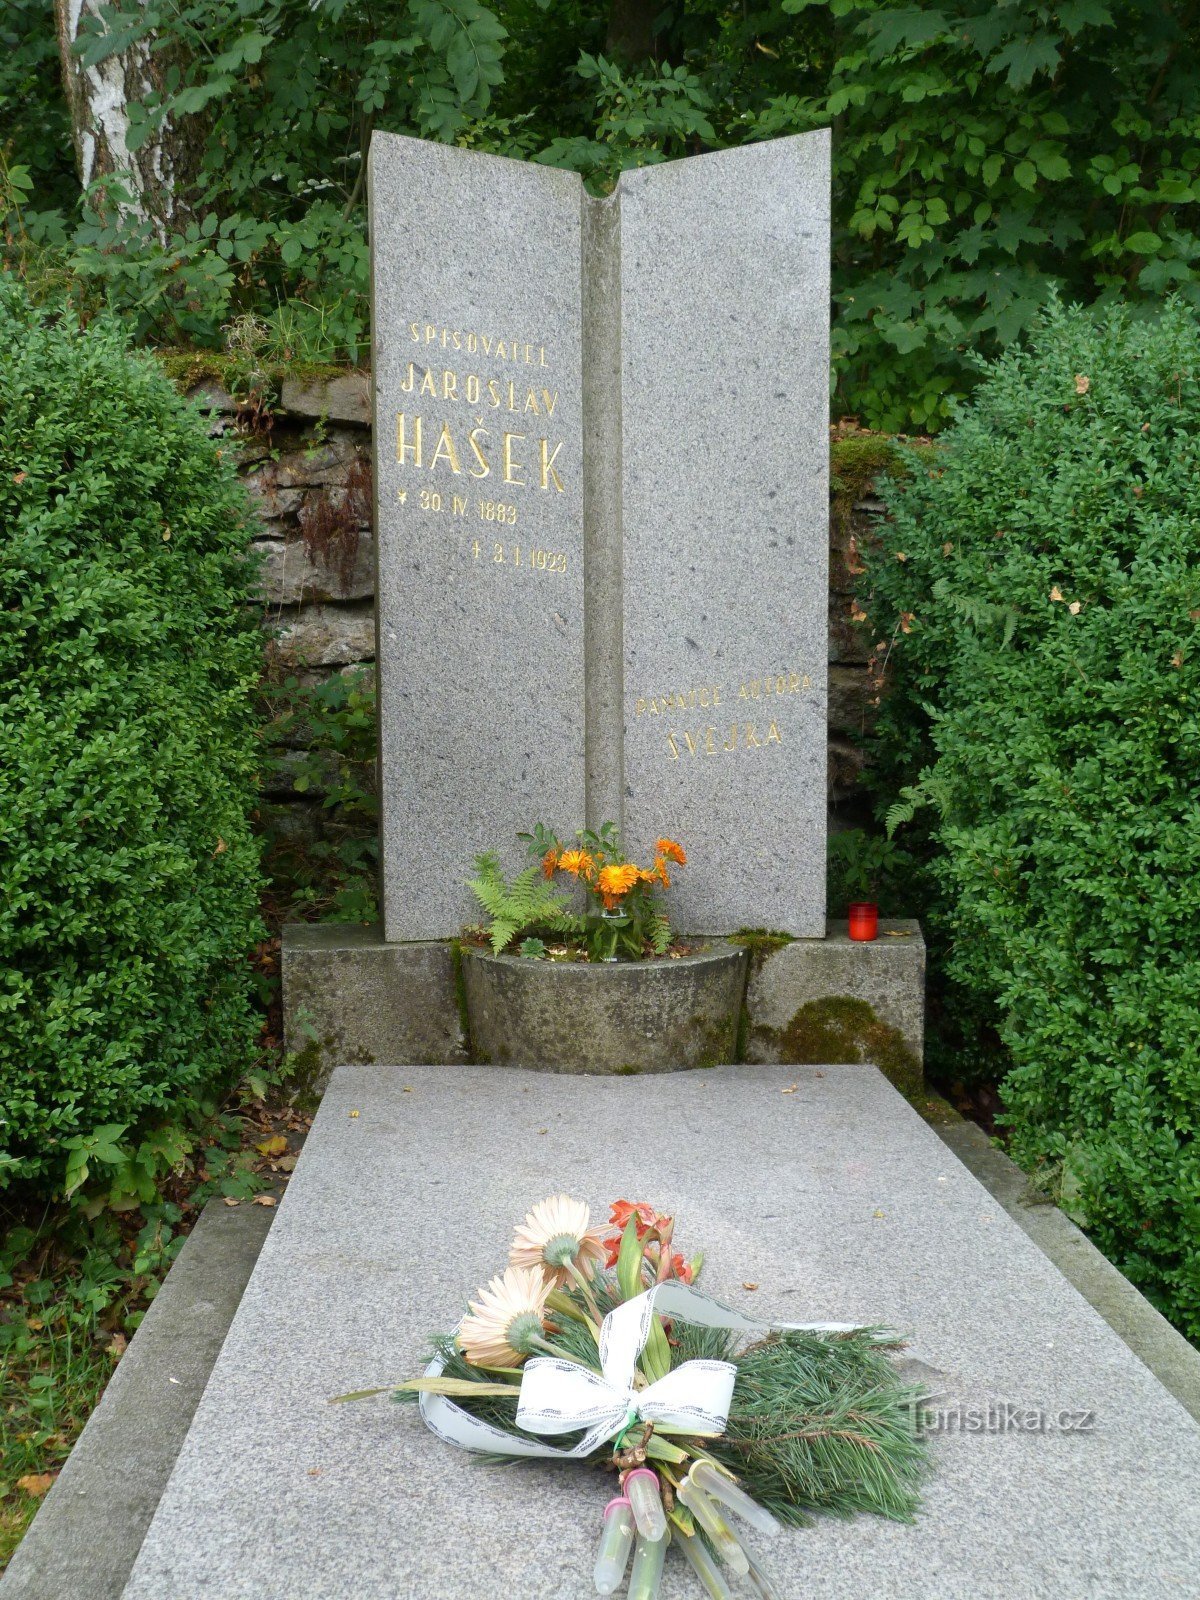 雅罗斯拉夫·哈谢克的故居和纪念馆